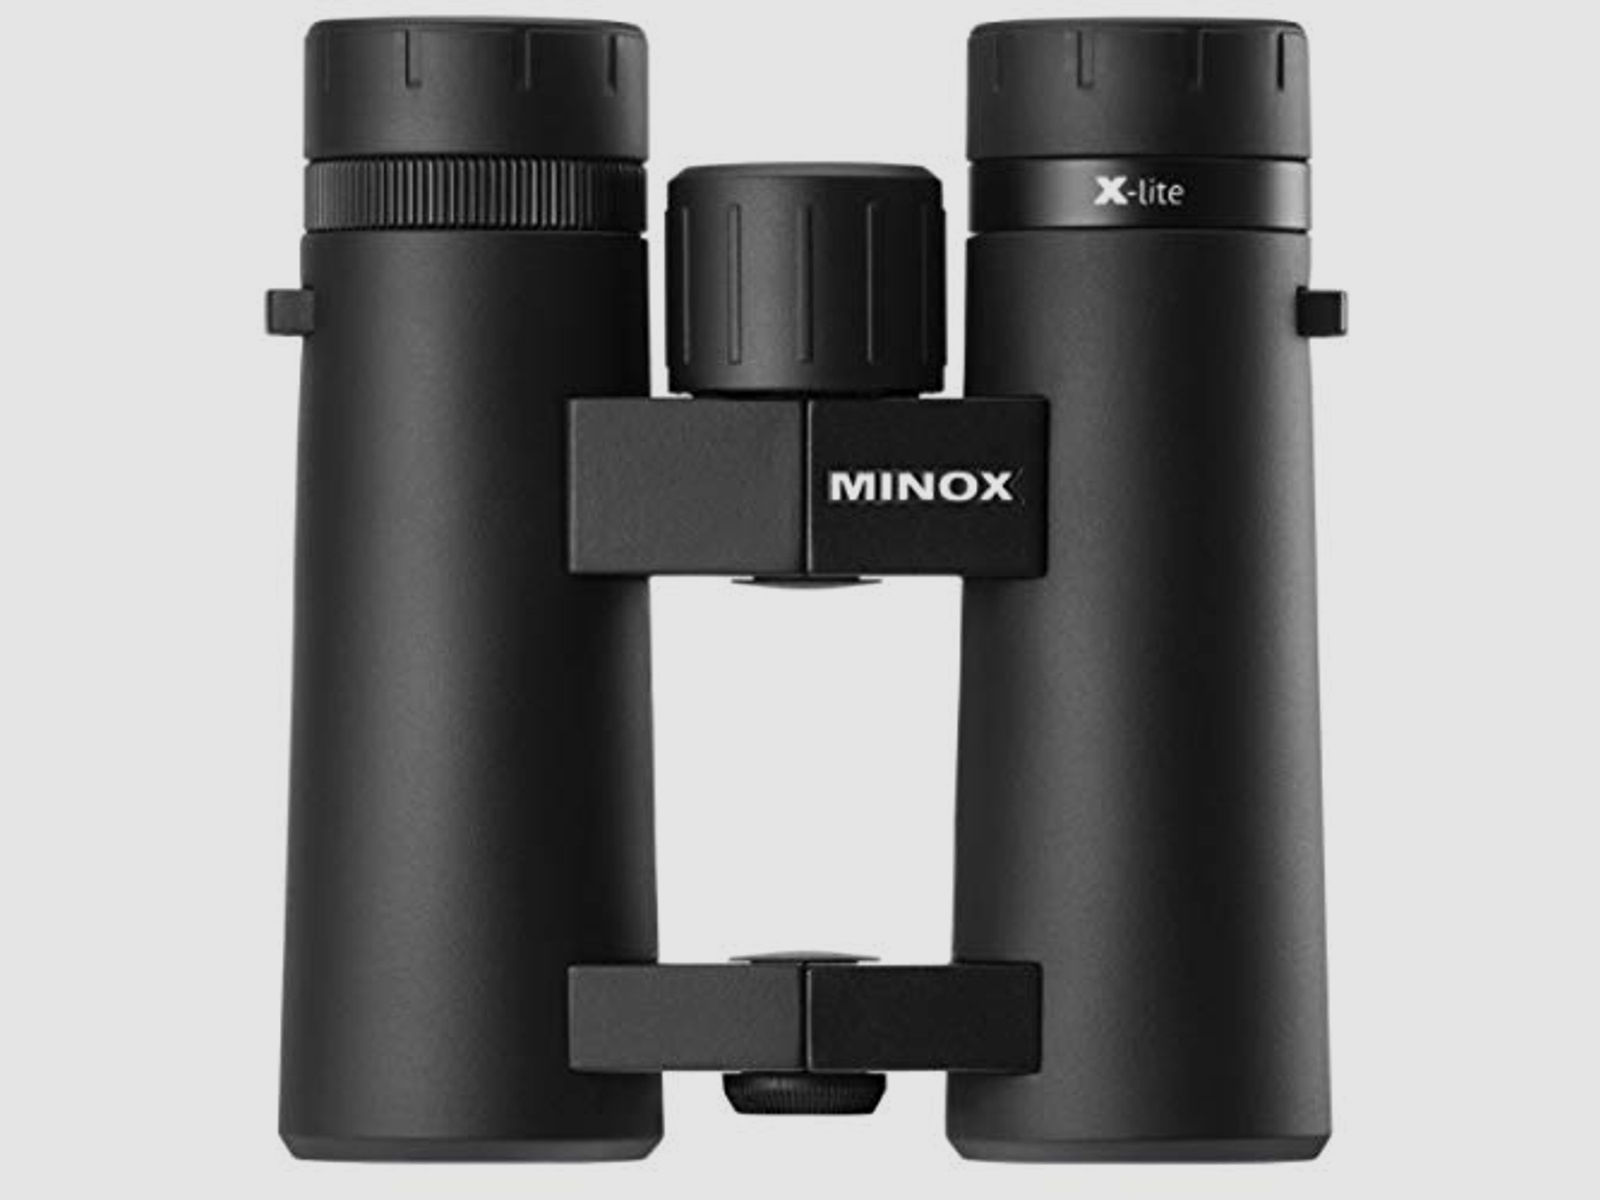 Minox 80407325 Fernglas XLite 8x26 Neuheit für Reviergang und Outdooraktivität